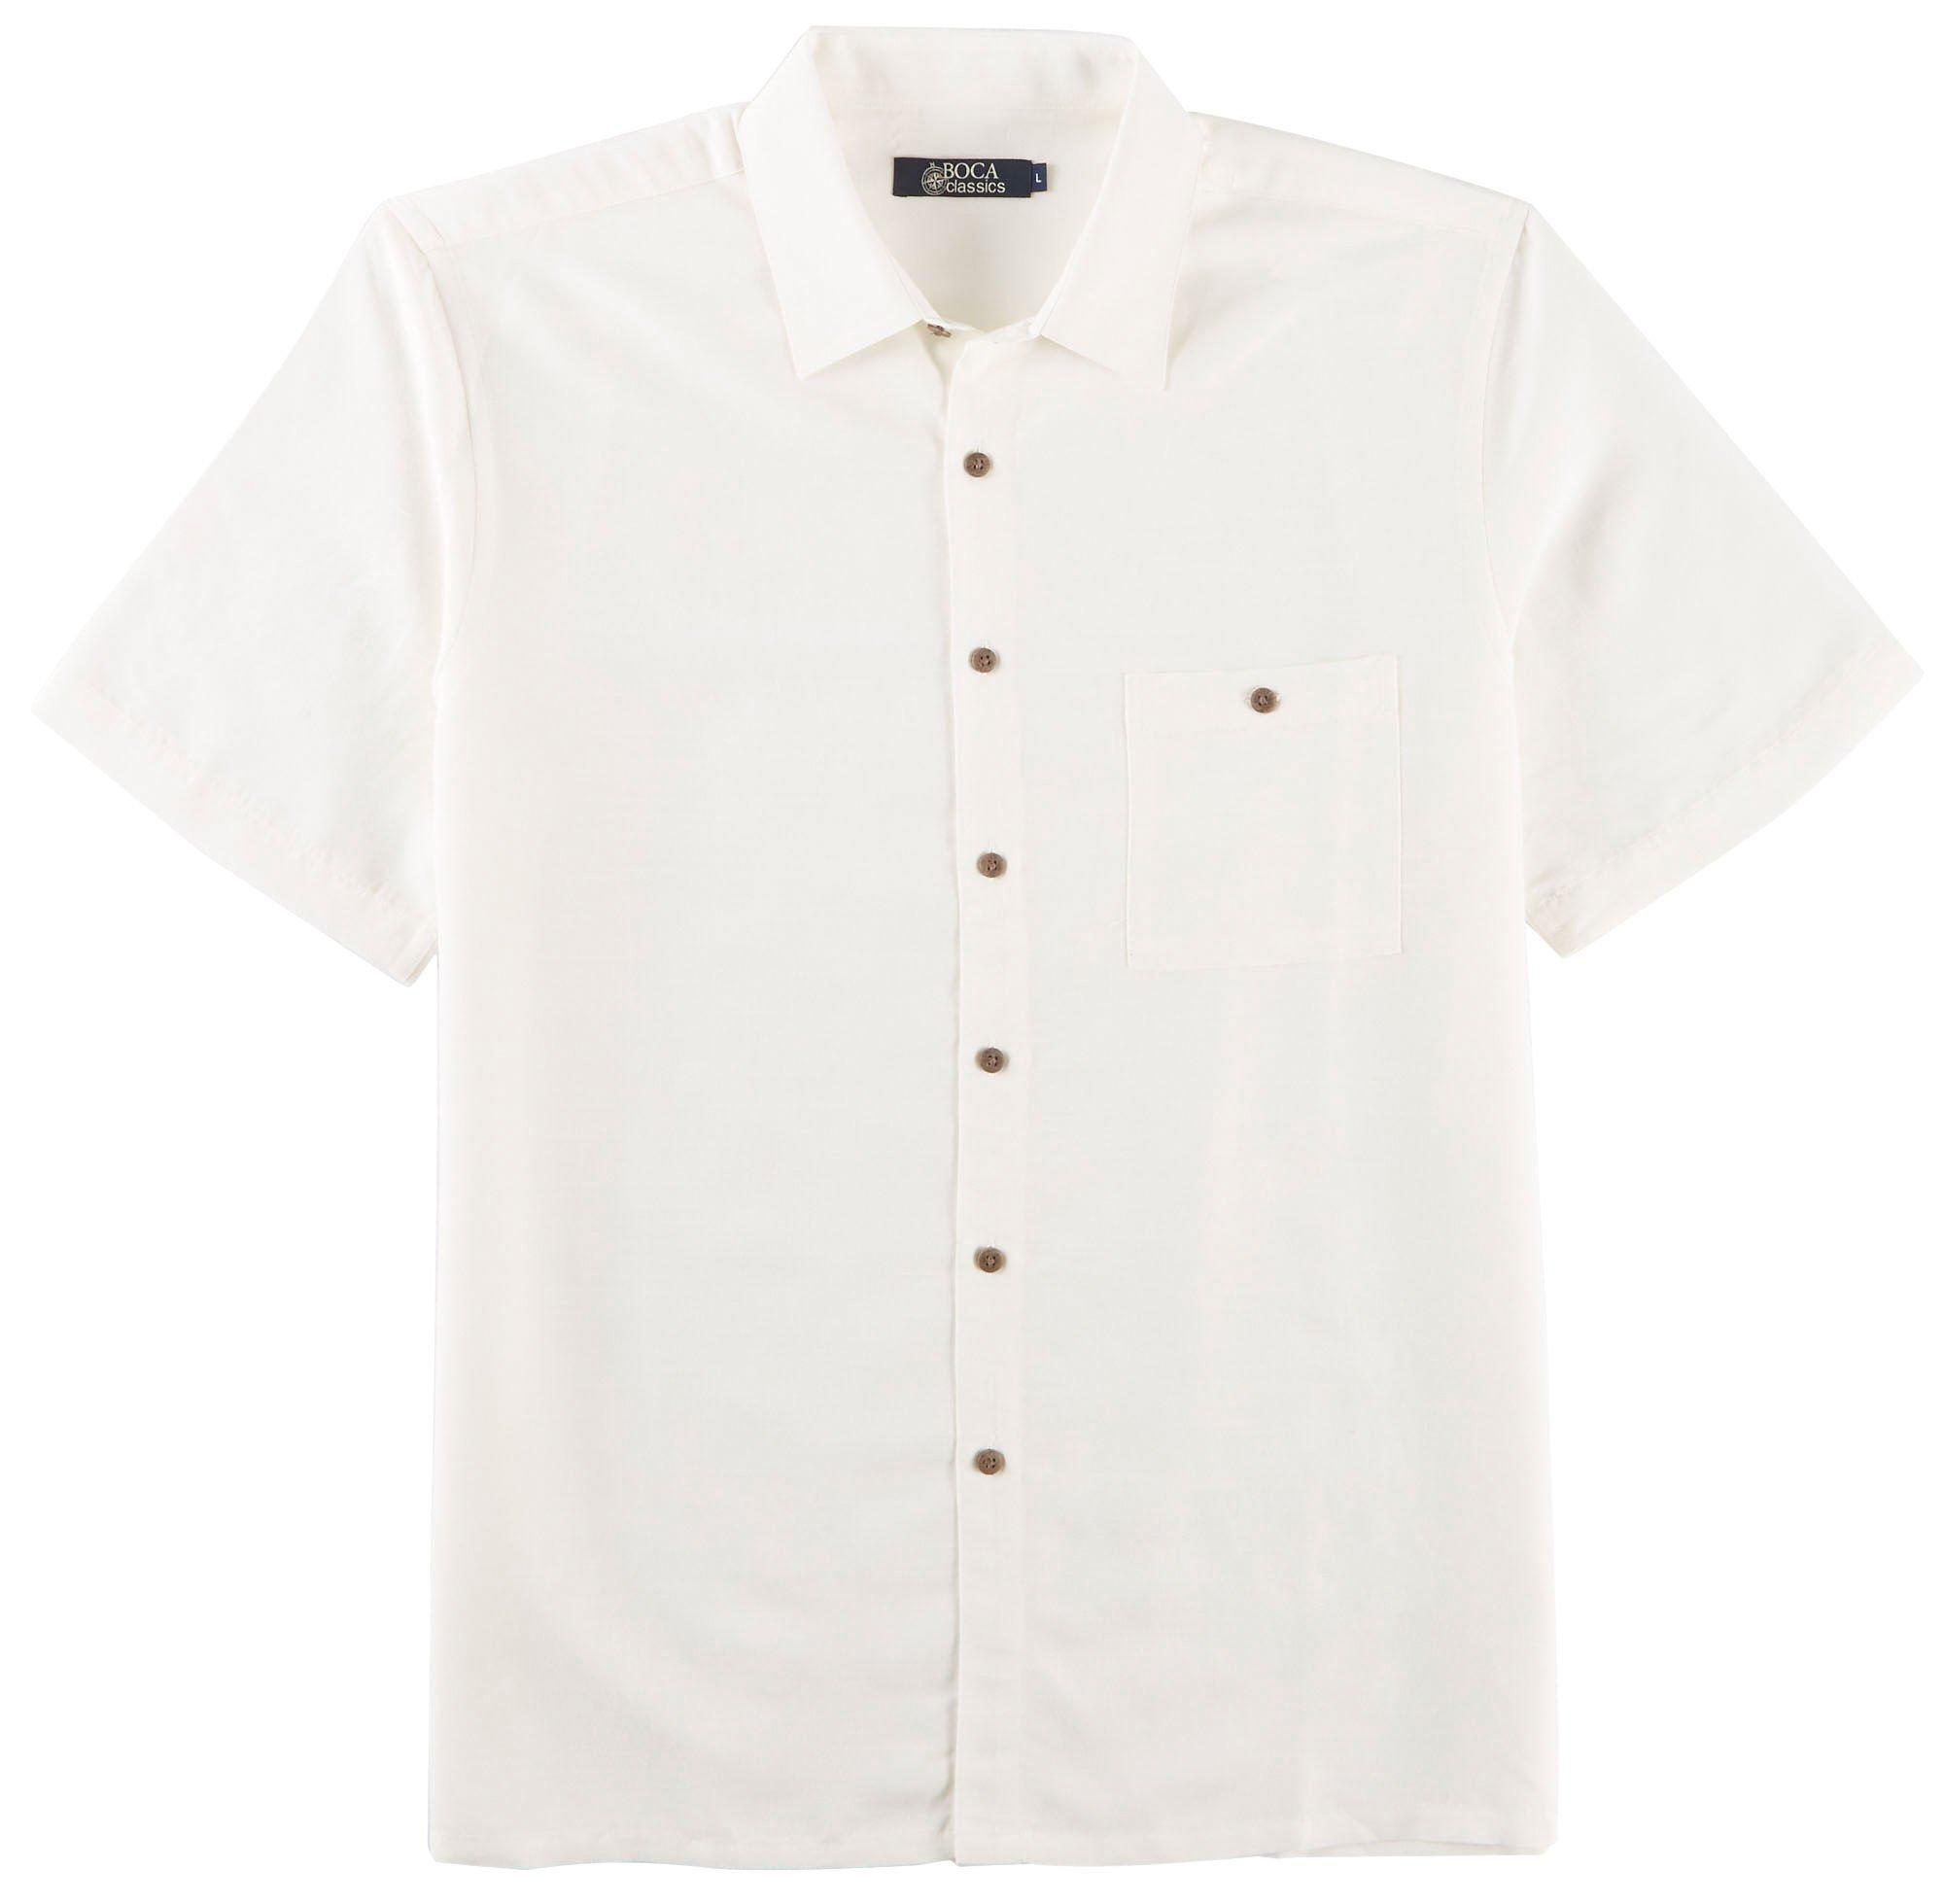 Men's Casual Shirts | Short Sleeve Shirts | Bealls Florida